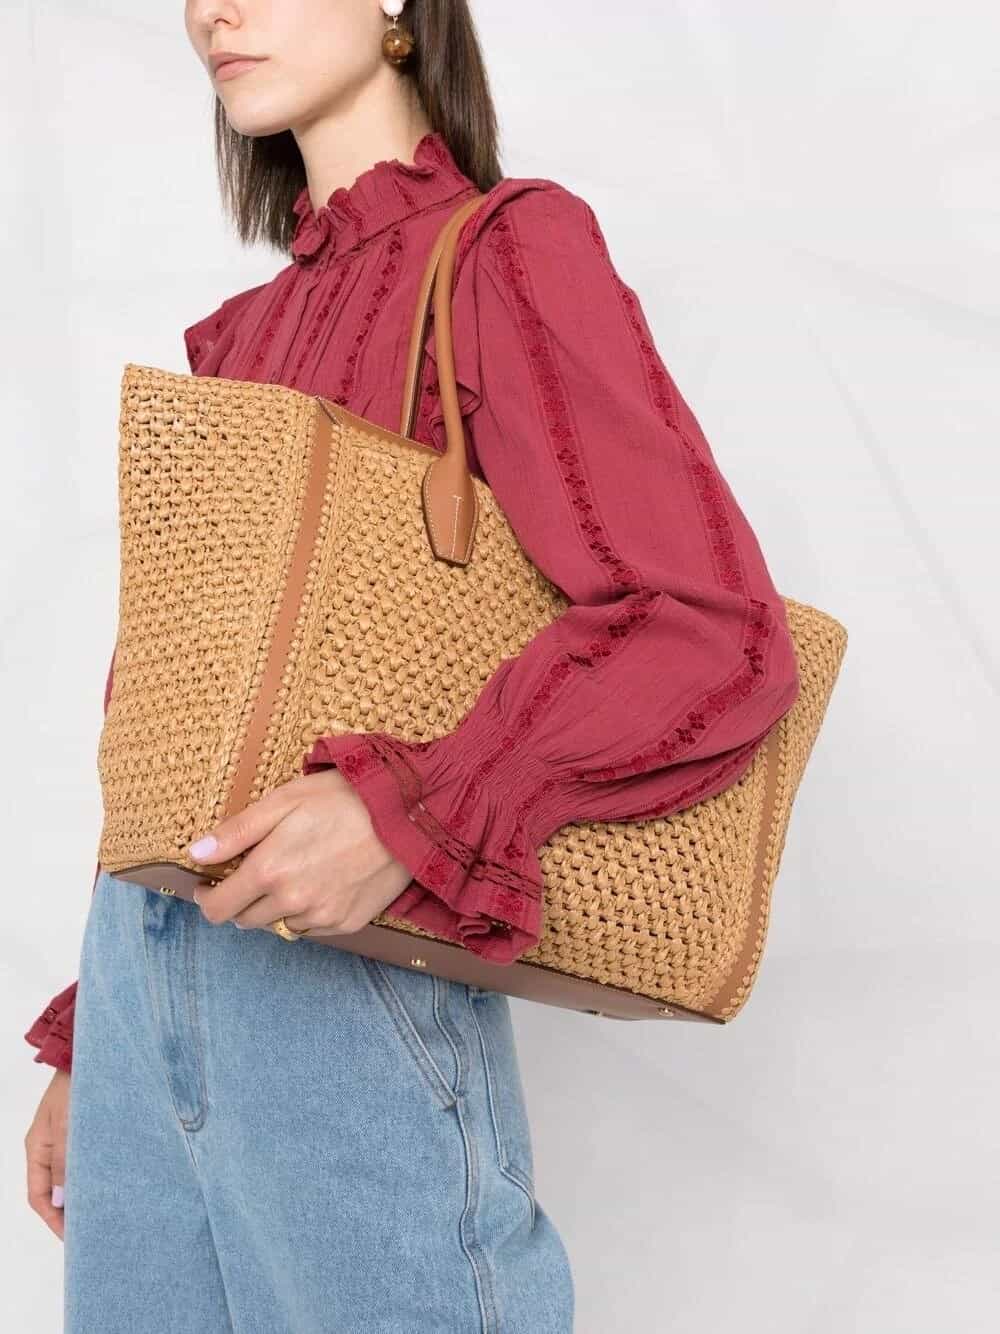 Vuoi creare meravigliose borse con le tue mani?